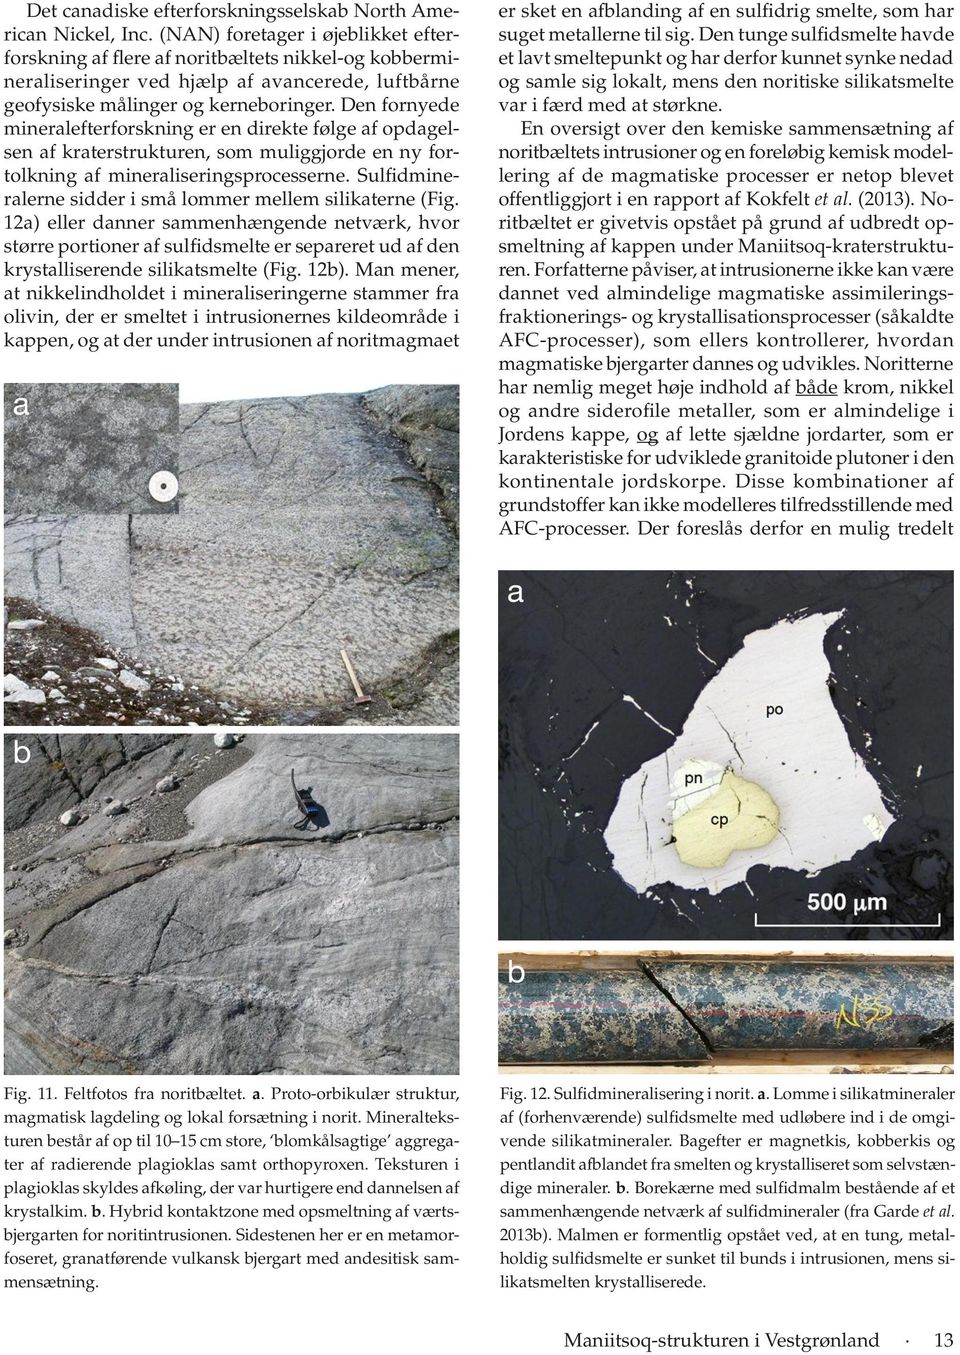 Den fornyede mineralefterforskning er en direkte følge af opdagelsen af kraterstrukturen, som muliggjorde en ny fortolkning af mineraliseringsprocesserne.